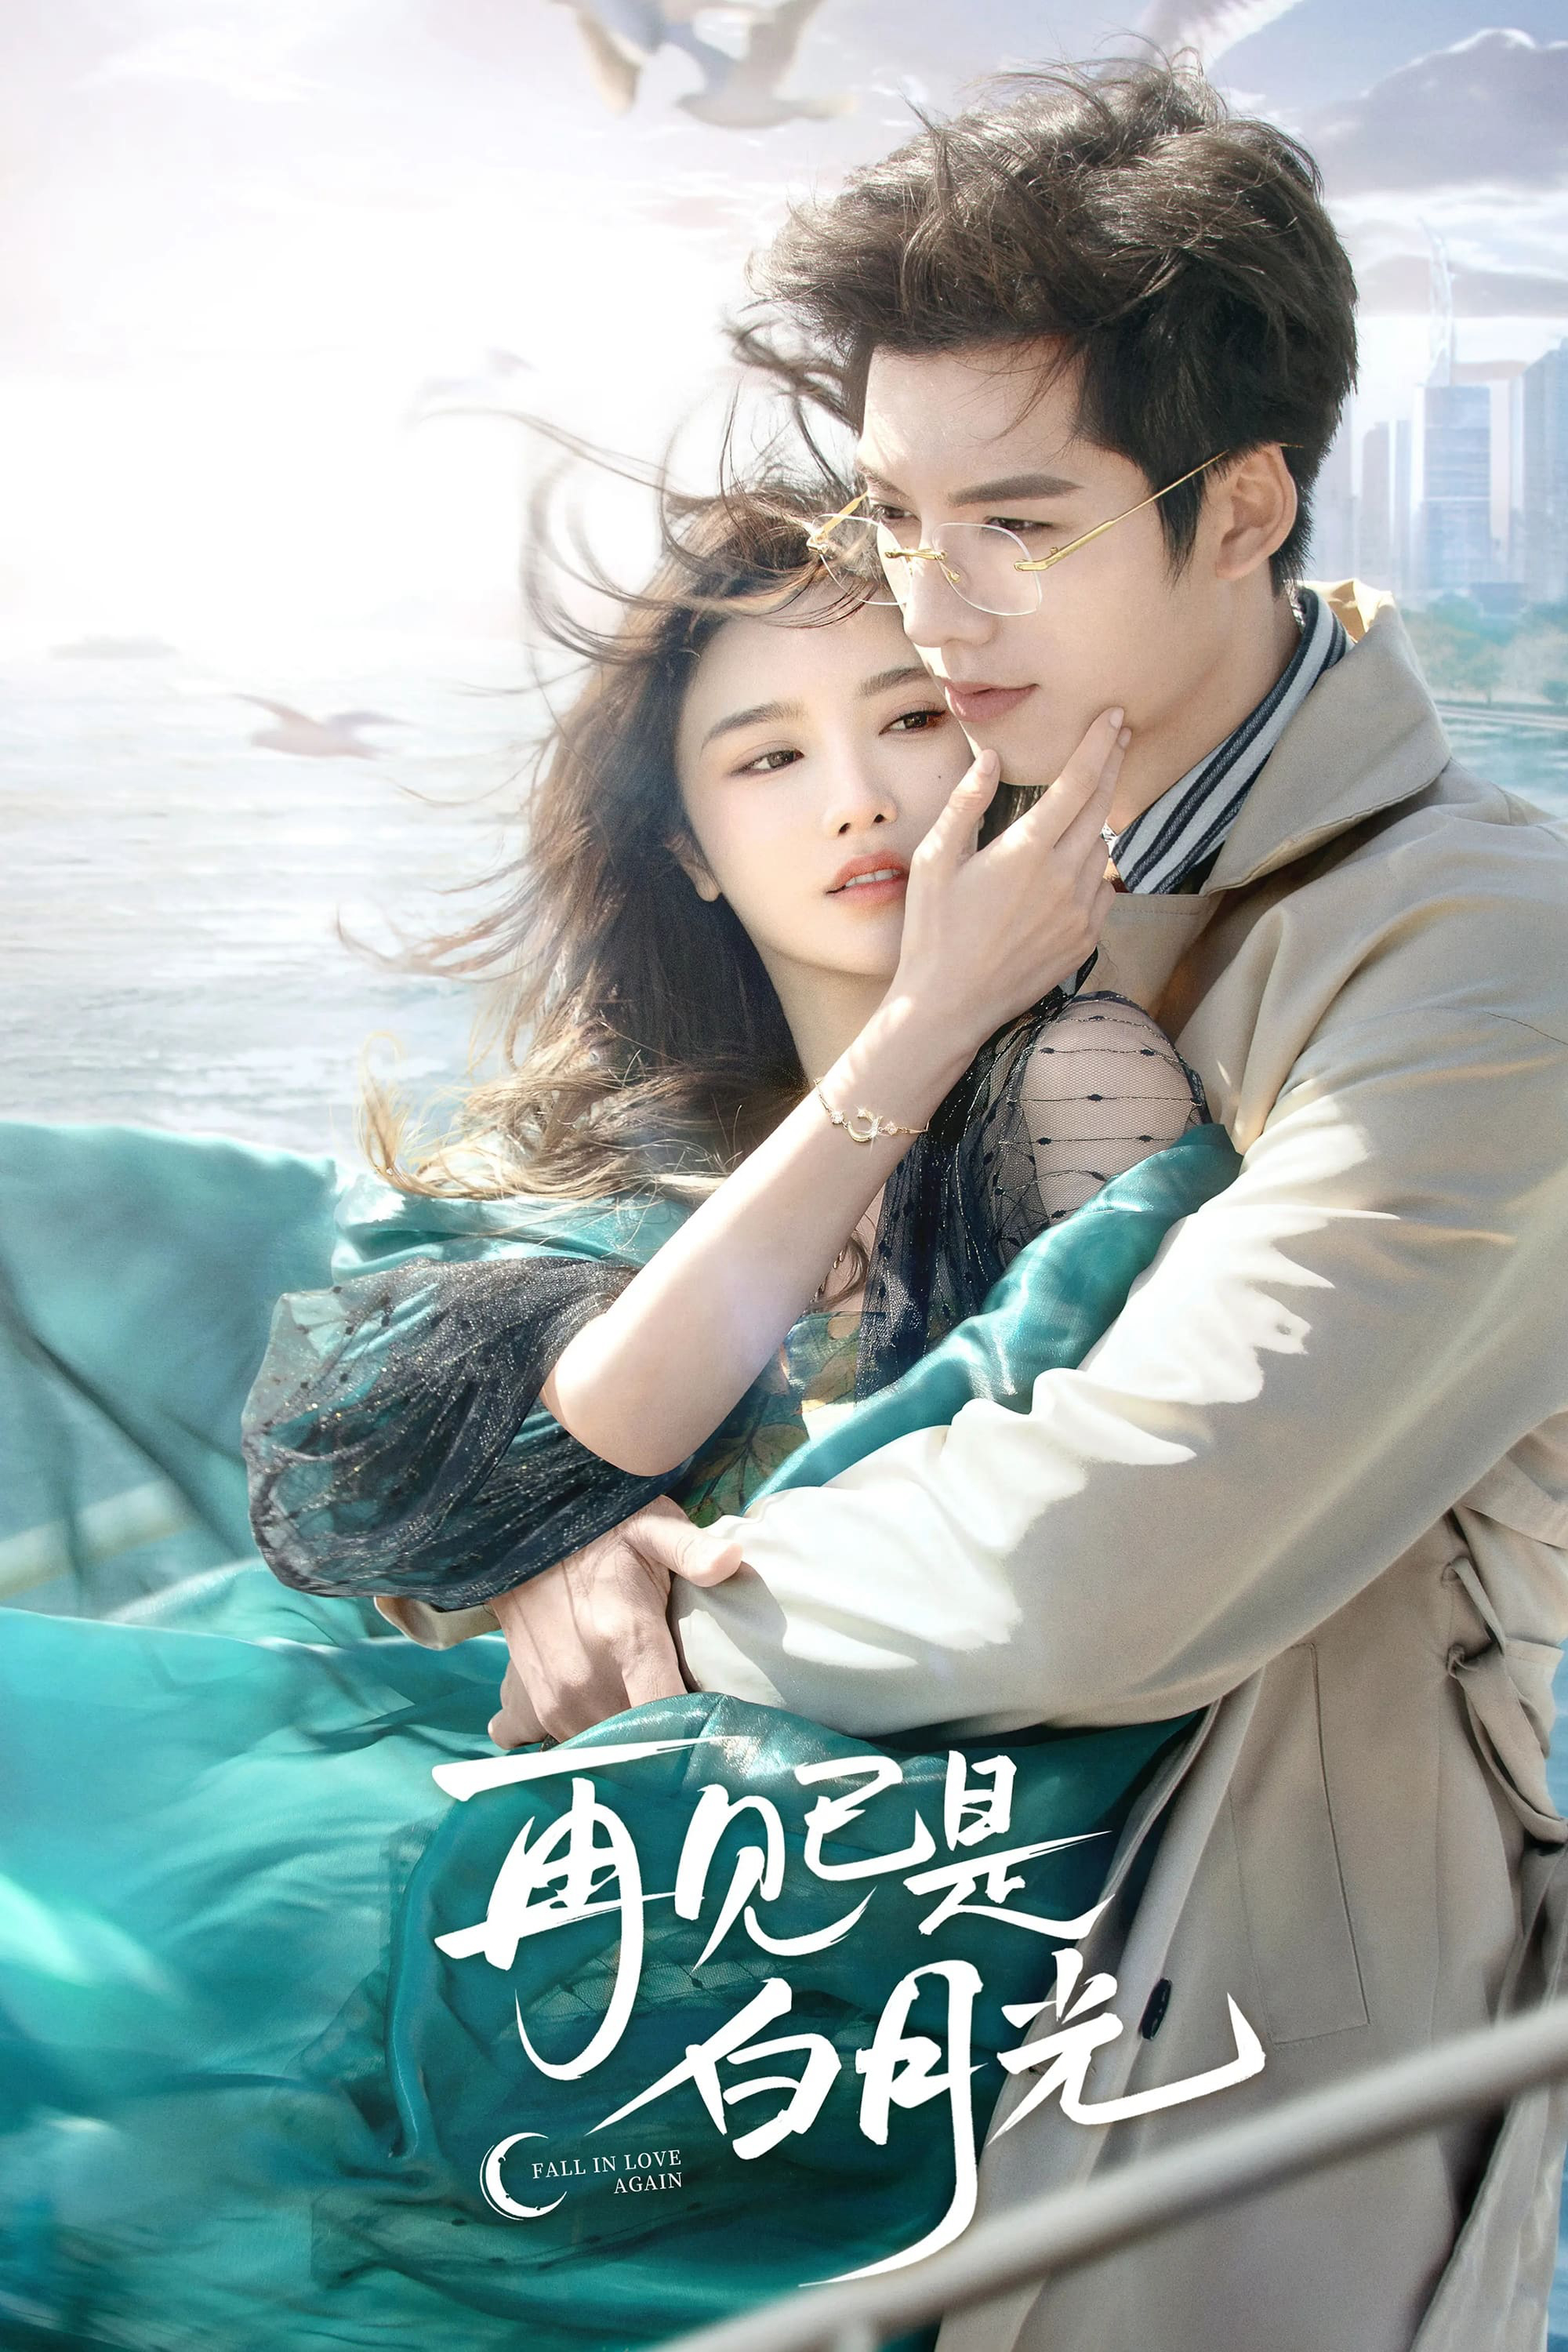 Poster Phim Tạm Biệt Bạch Nguyệt Quang (Fall in Love Again)